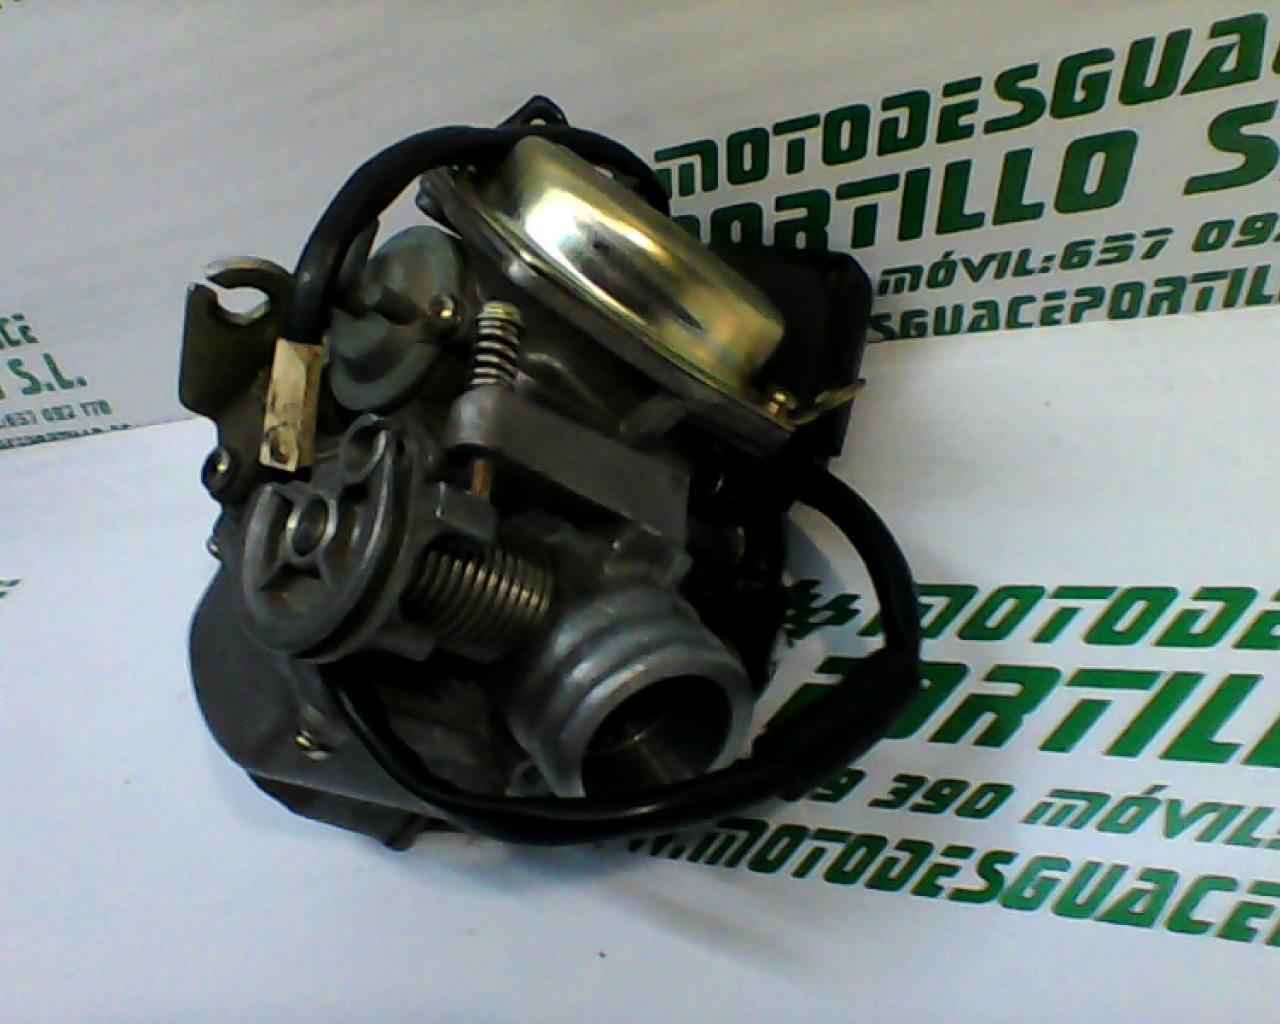 Carburador PIONNER QM-125-T (2009-2010)